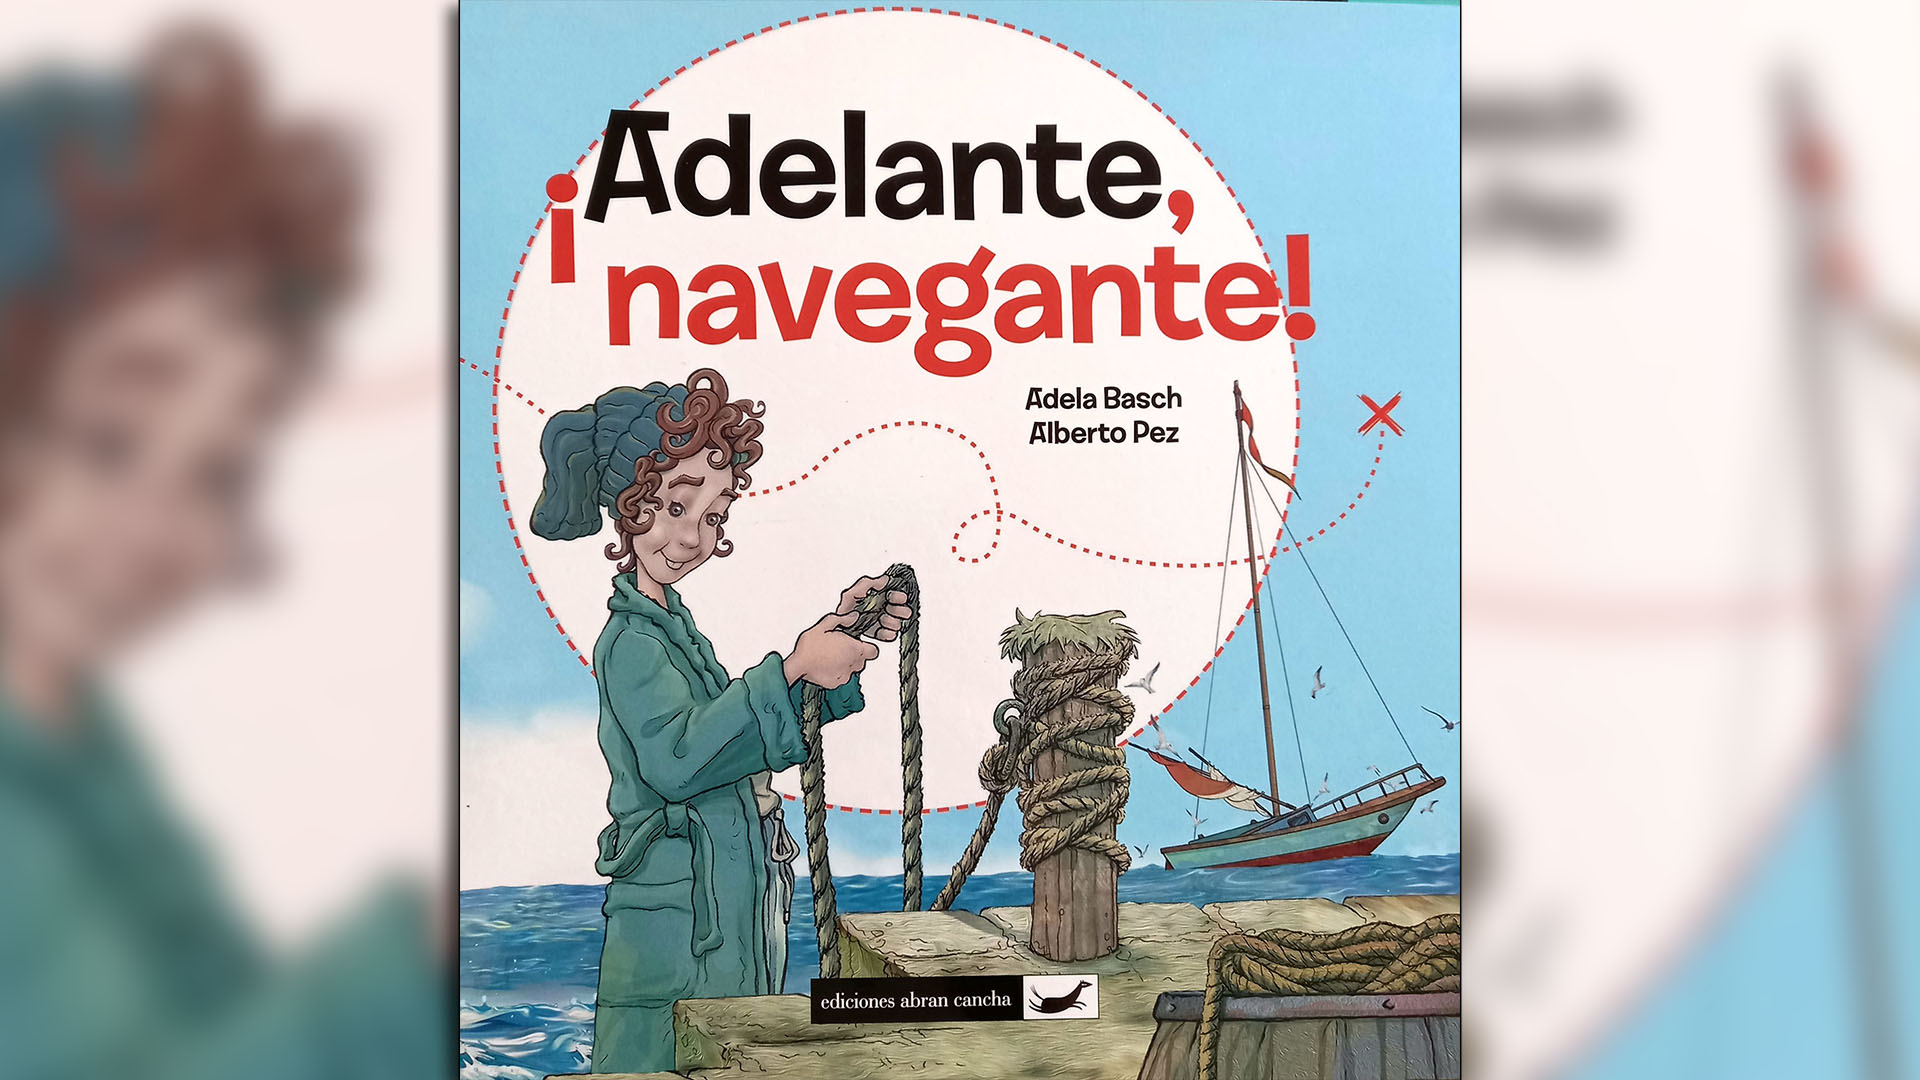 ¡Adelante, navegante!, escrito por Adela Basch. Ilustrado por Alberto Pez. Buenos Aires: Abran cancha, 2020